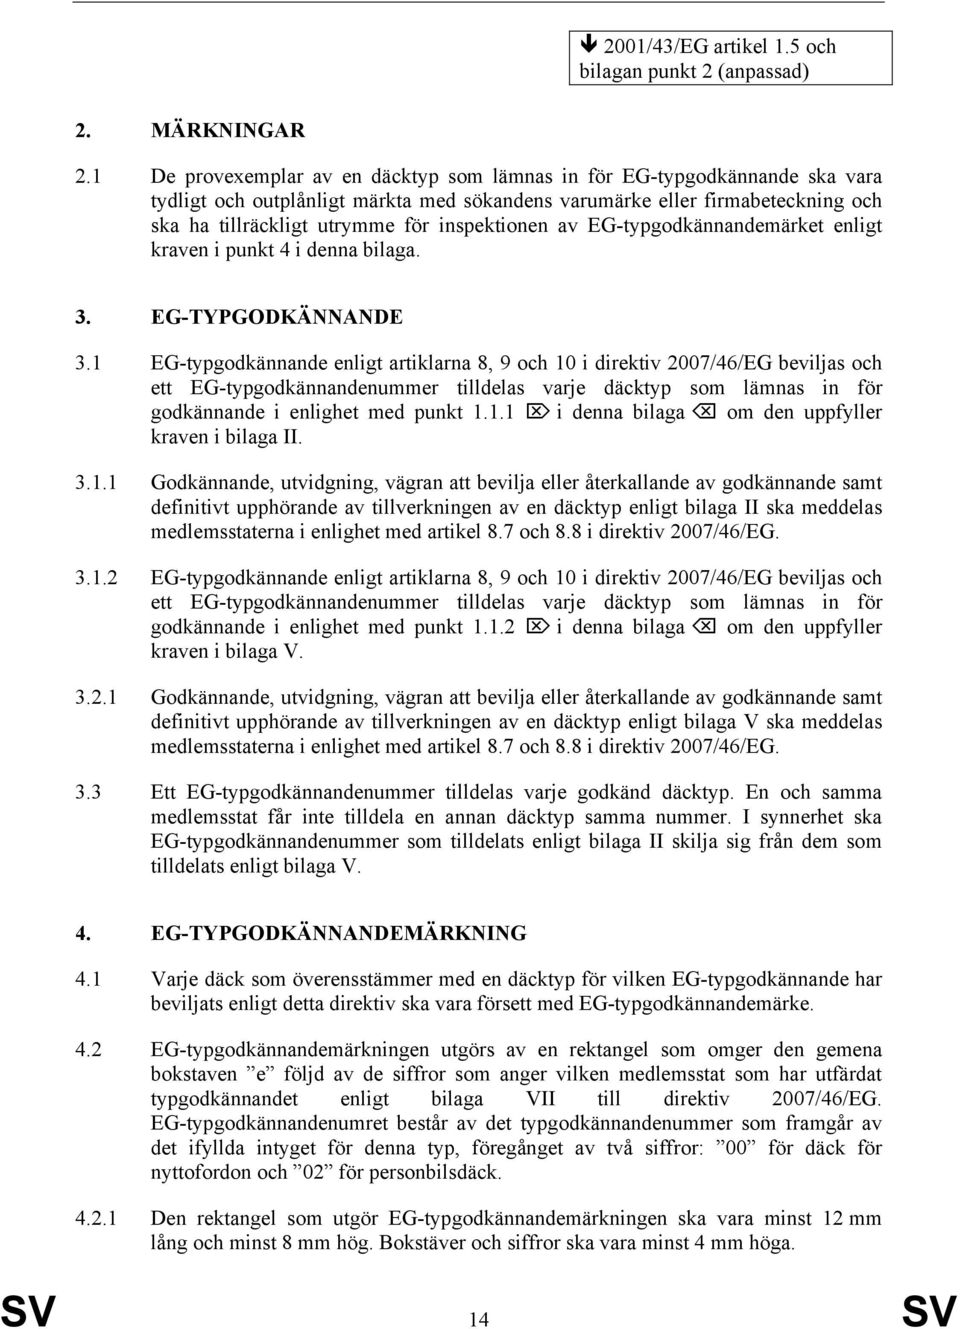 inspektionen av EG-typgodkännandemärket enligt kraven i punkt 4 i denna bilaga. 3. EG-TYPGODKÄNNANDE 3.